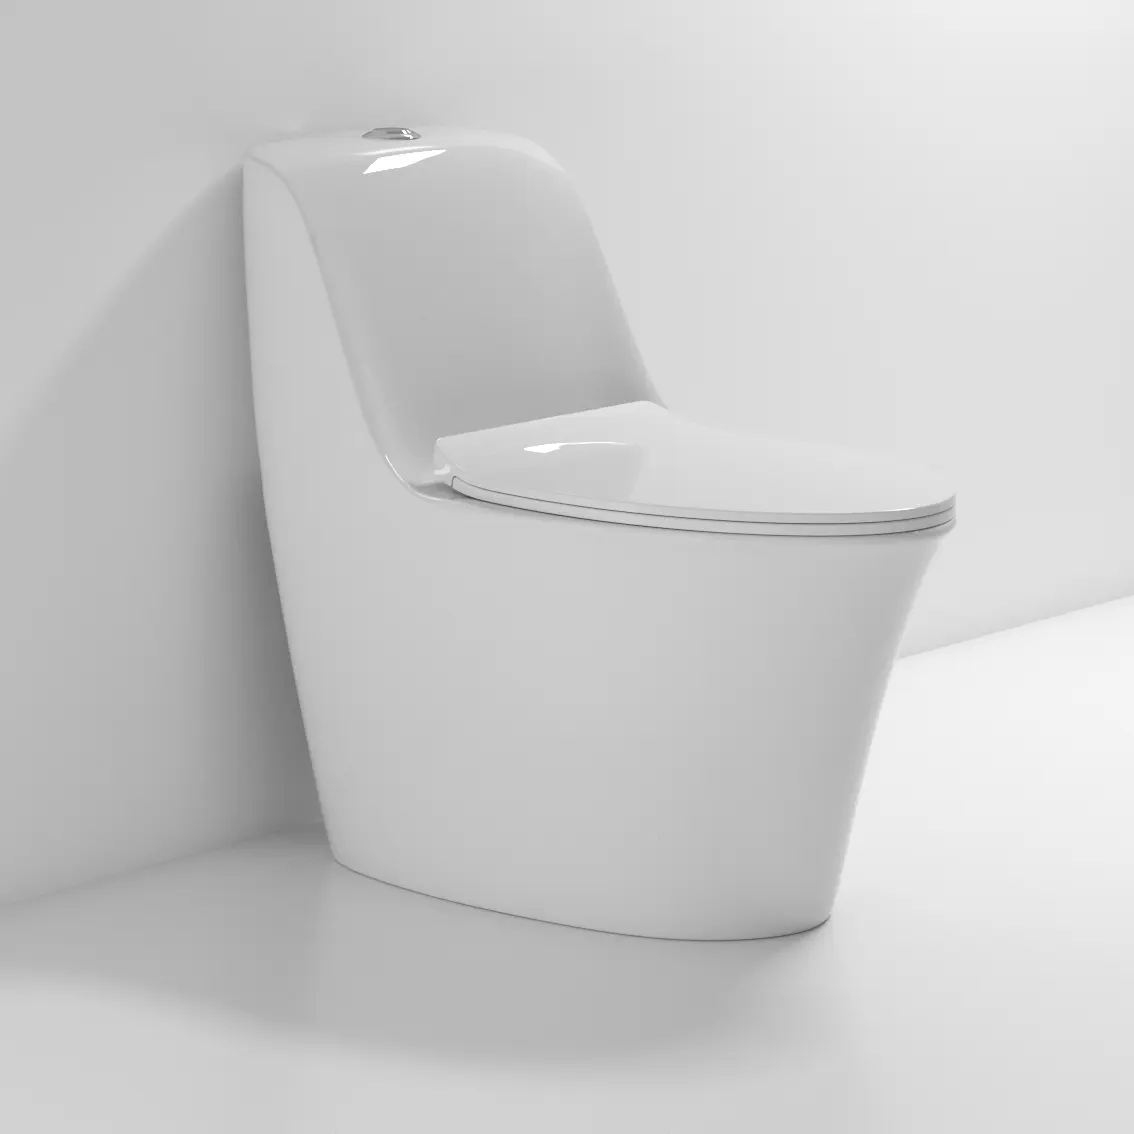 Nano Glasur neues Modell Hot Sale Luxus Sanitär keramik Einteilige billige chinesische WC S Falle Siphon Spül toilette mit UF-Abdeckung oder PP